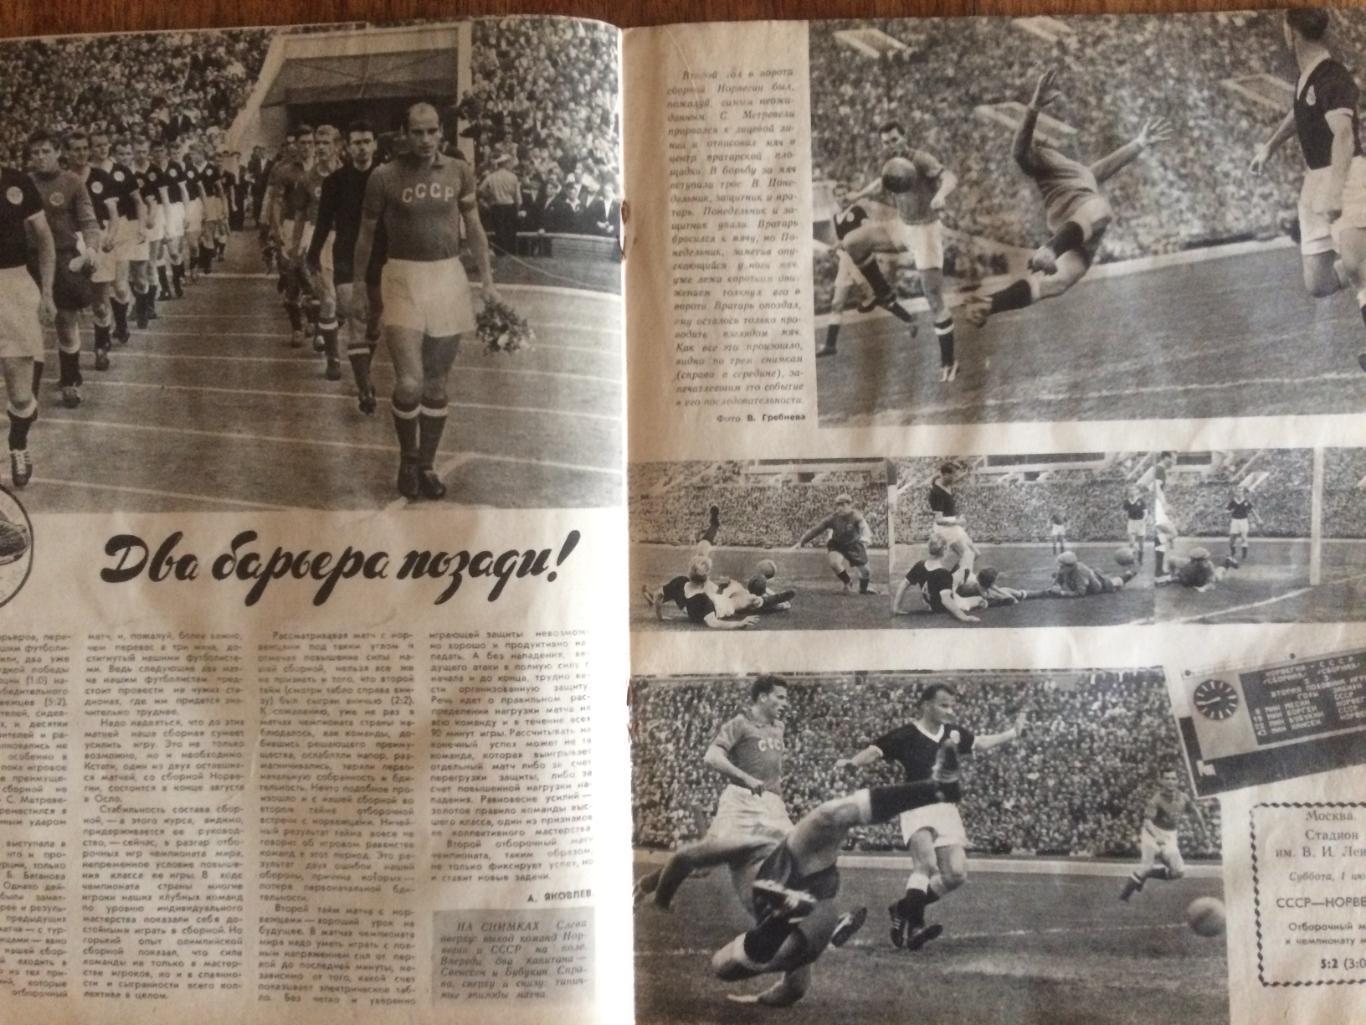 Журнал Спортивные игры №8 1961 1